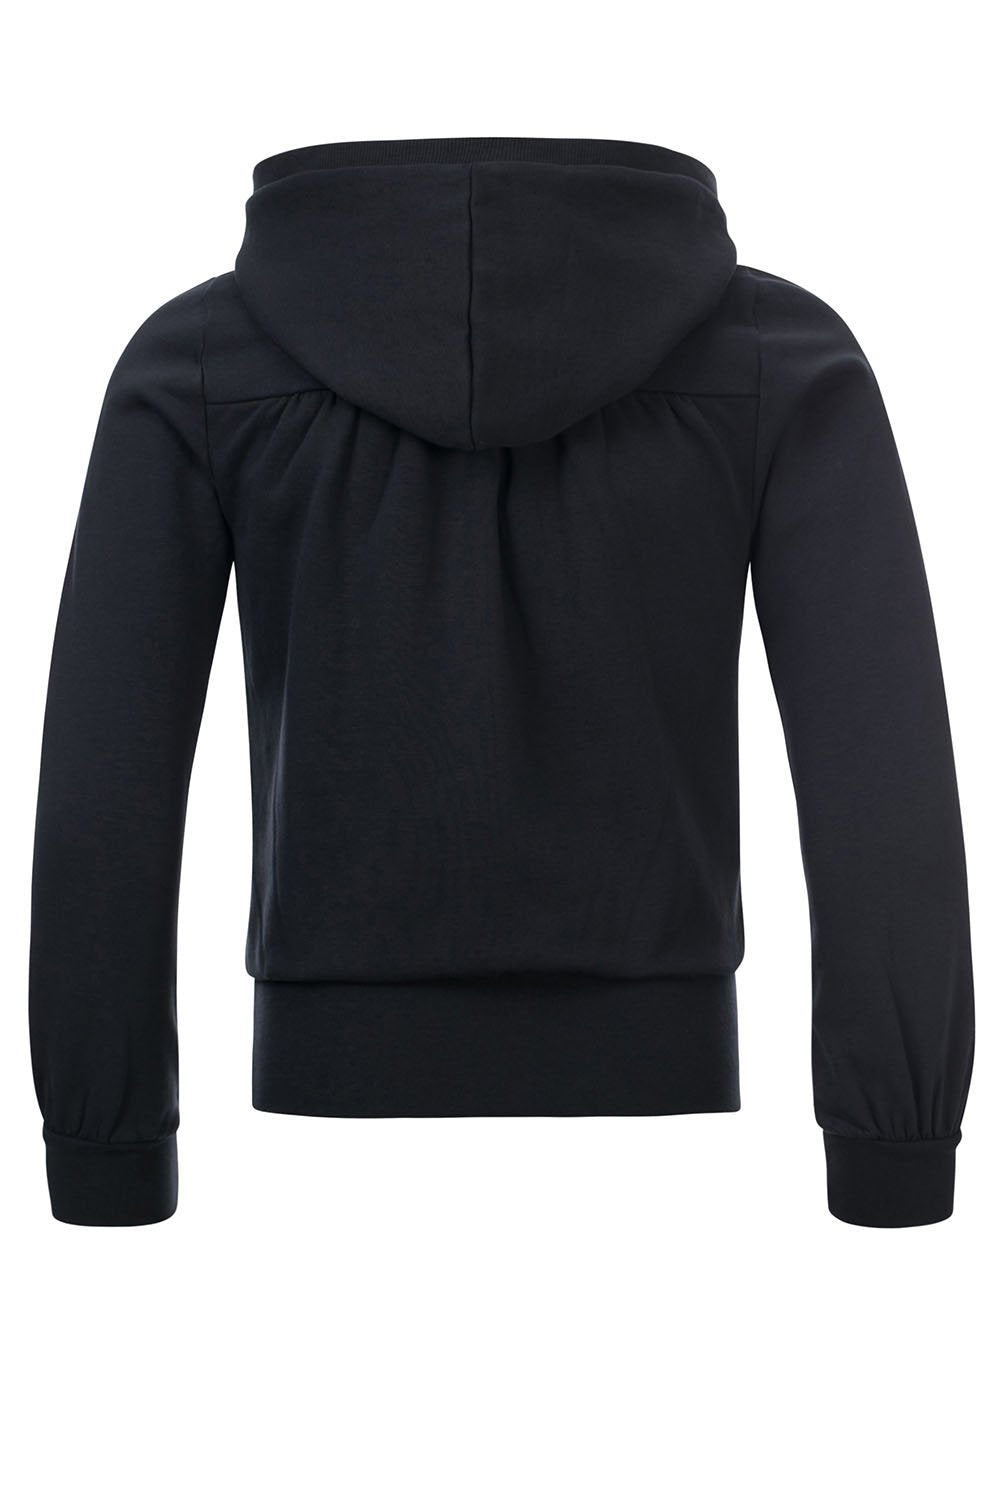 Meisjes 10Sixteen hooded Sweater van LOOXS 10sixteen in de kleur off black in maat 176.